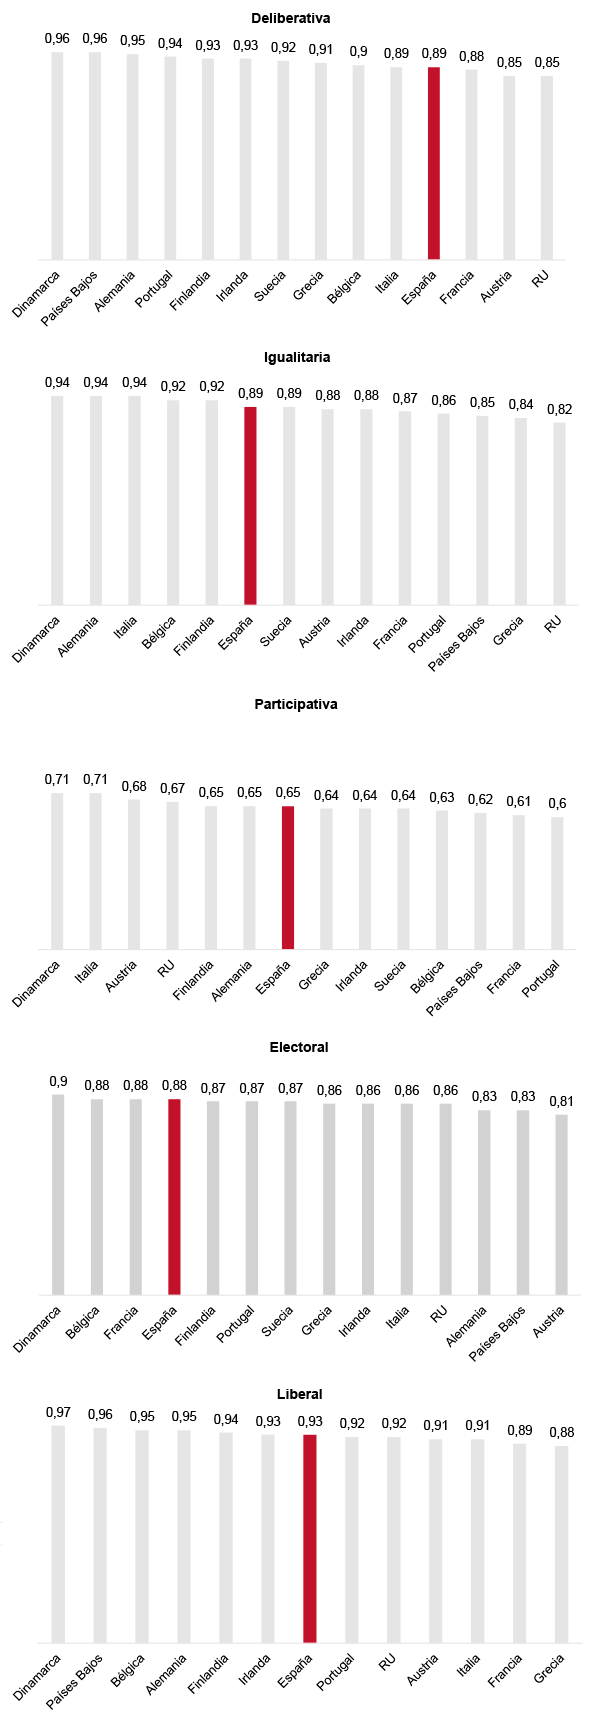 Figura 3. Comparación de las dimensiones democráticas de V-Dem entre algunos países europeos (2020, v10)